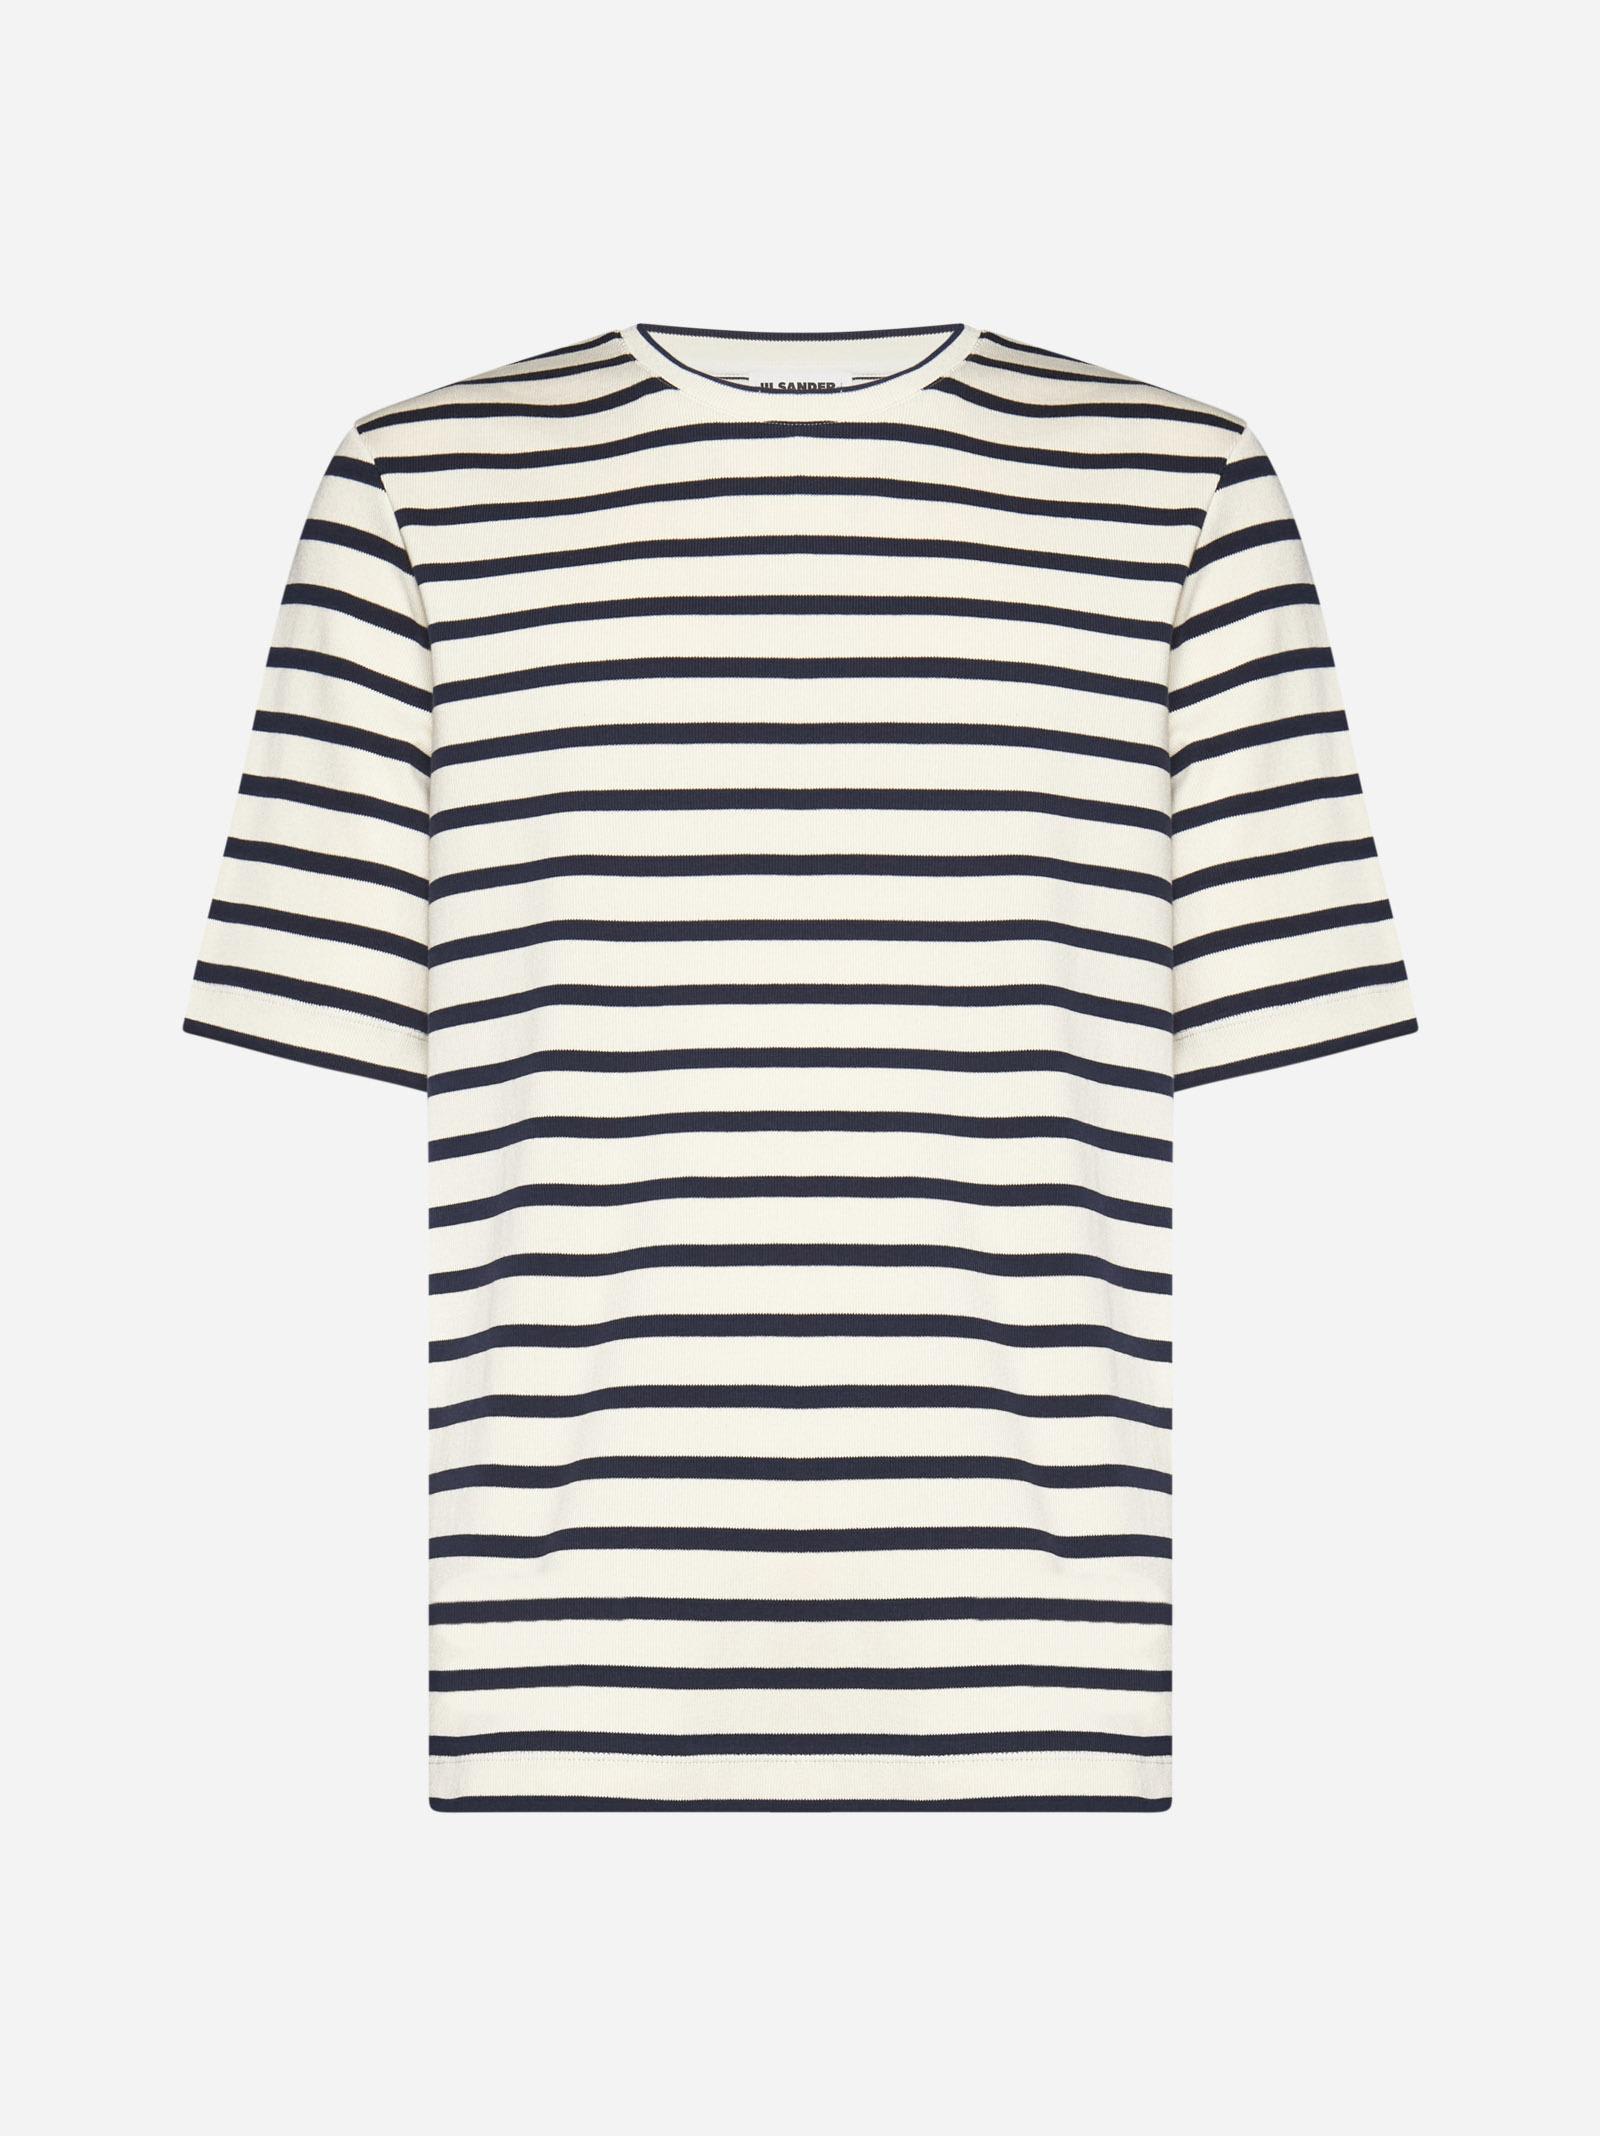 Shop Jil Sander Striped Cotton T-shirt